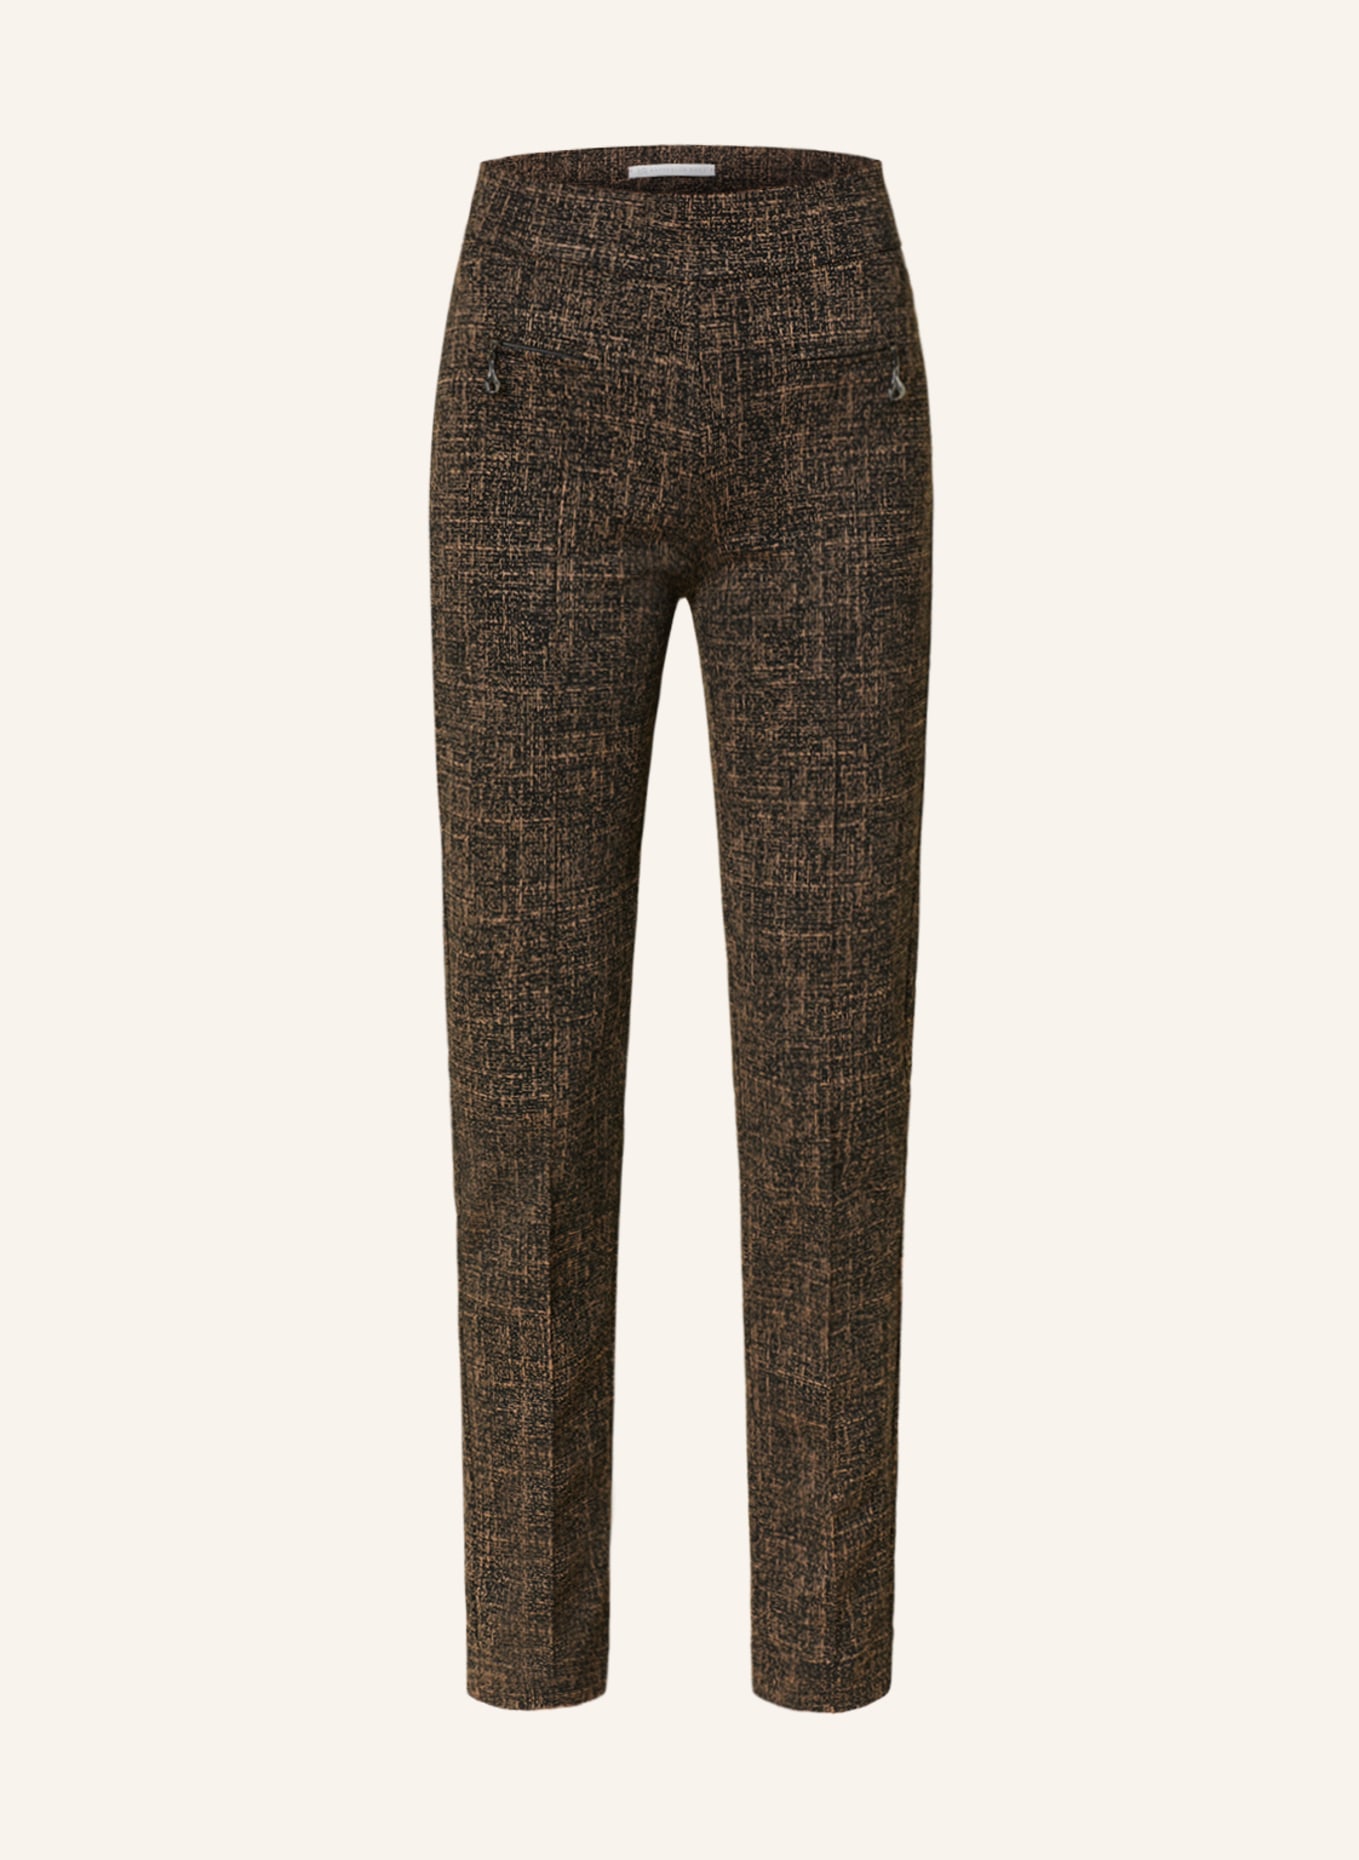 RAFFAELLO ROSSI Jersey trousers OTTI, Color: DARK BROWN/ BEIGE (Image 1)